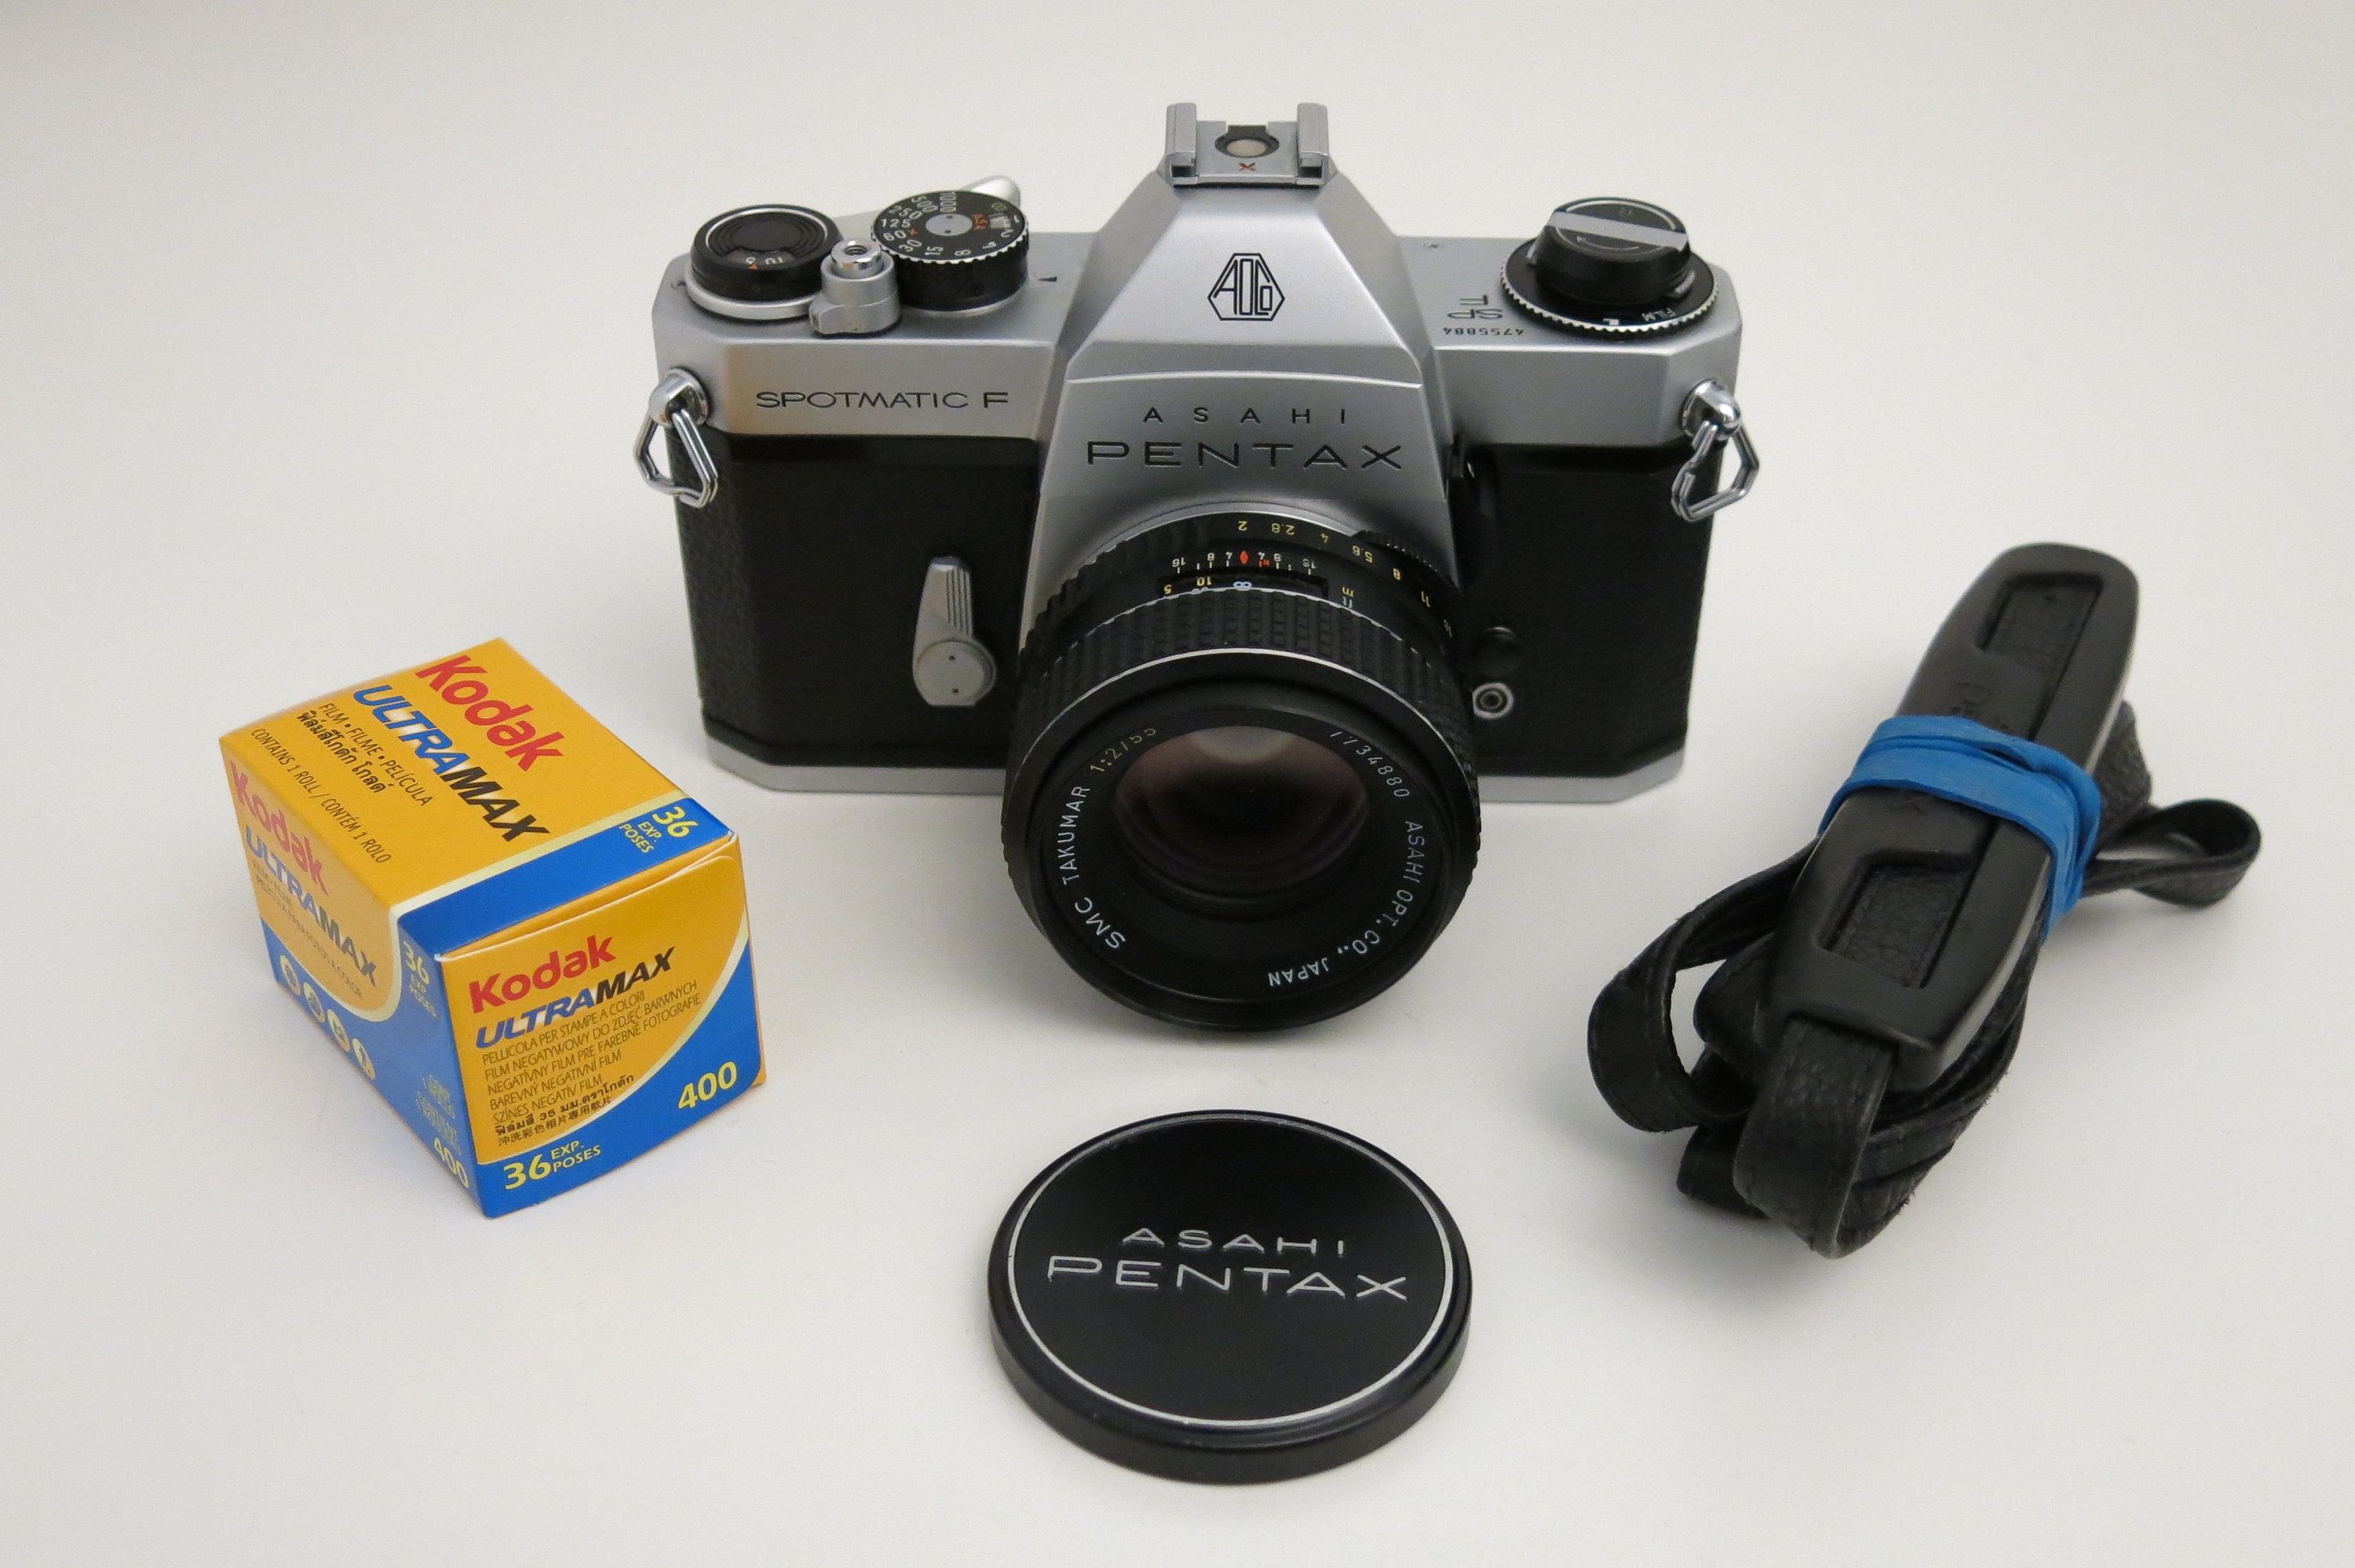 PENTAX Spotmatic SP F Asahi Pentax 35mm film Camera LENS | Etsy